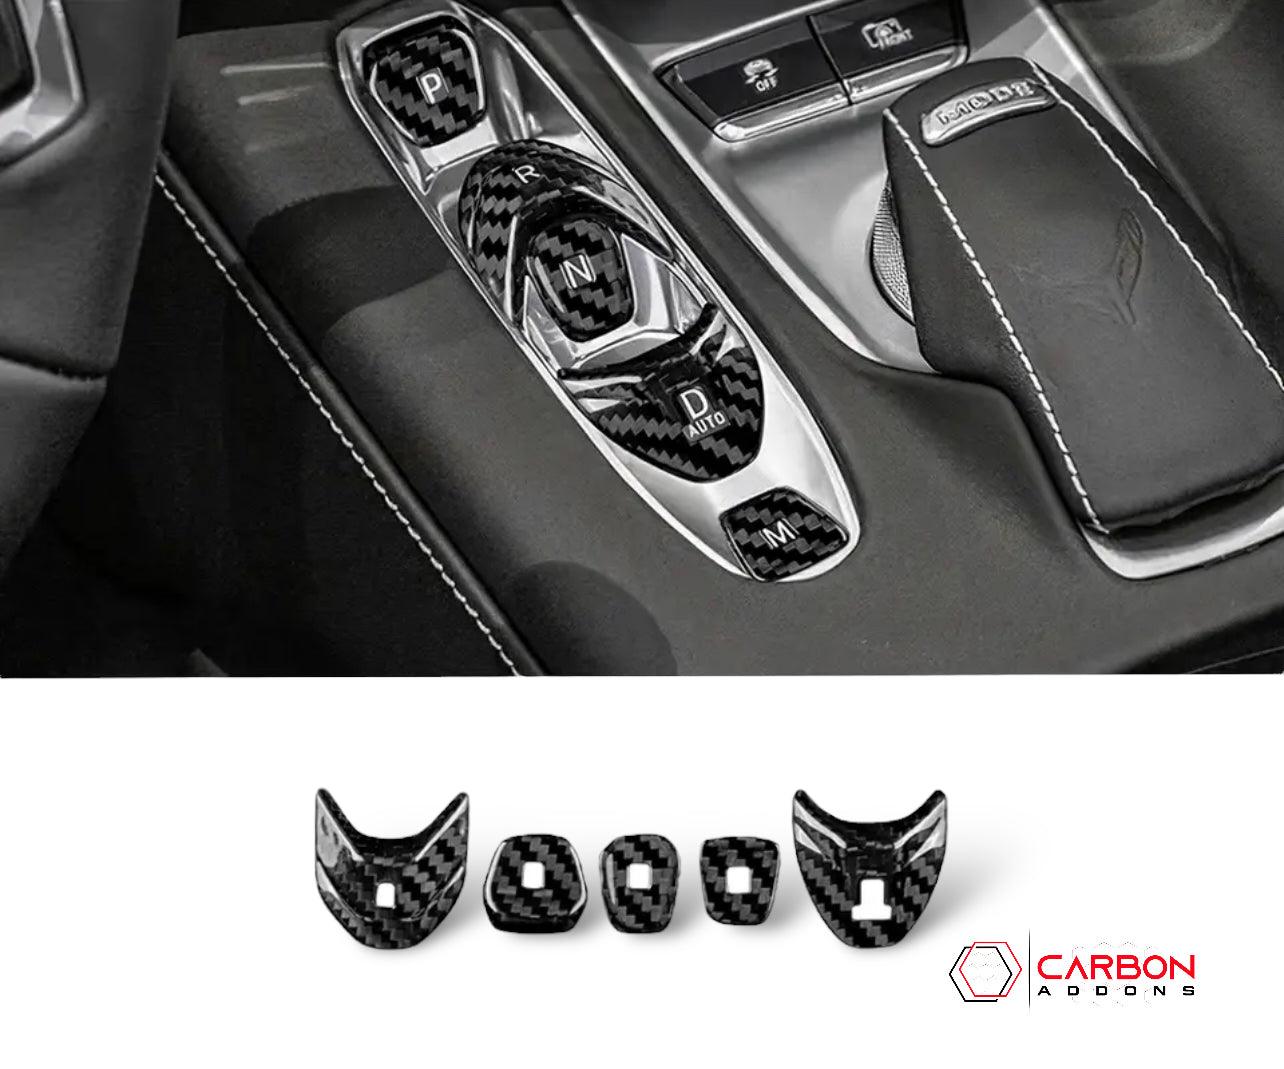 [5pcs] C8 Corvette Carbon Fiber Gear Shift Button Cover - carbonaddons Carbon Fiber Parts, Accessories, Upgrades, Mods